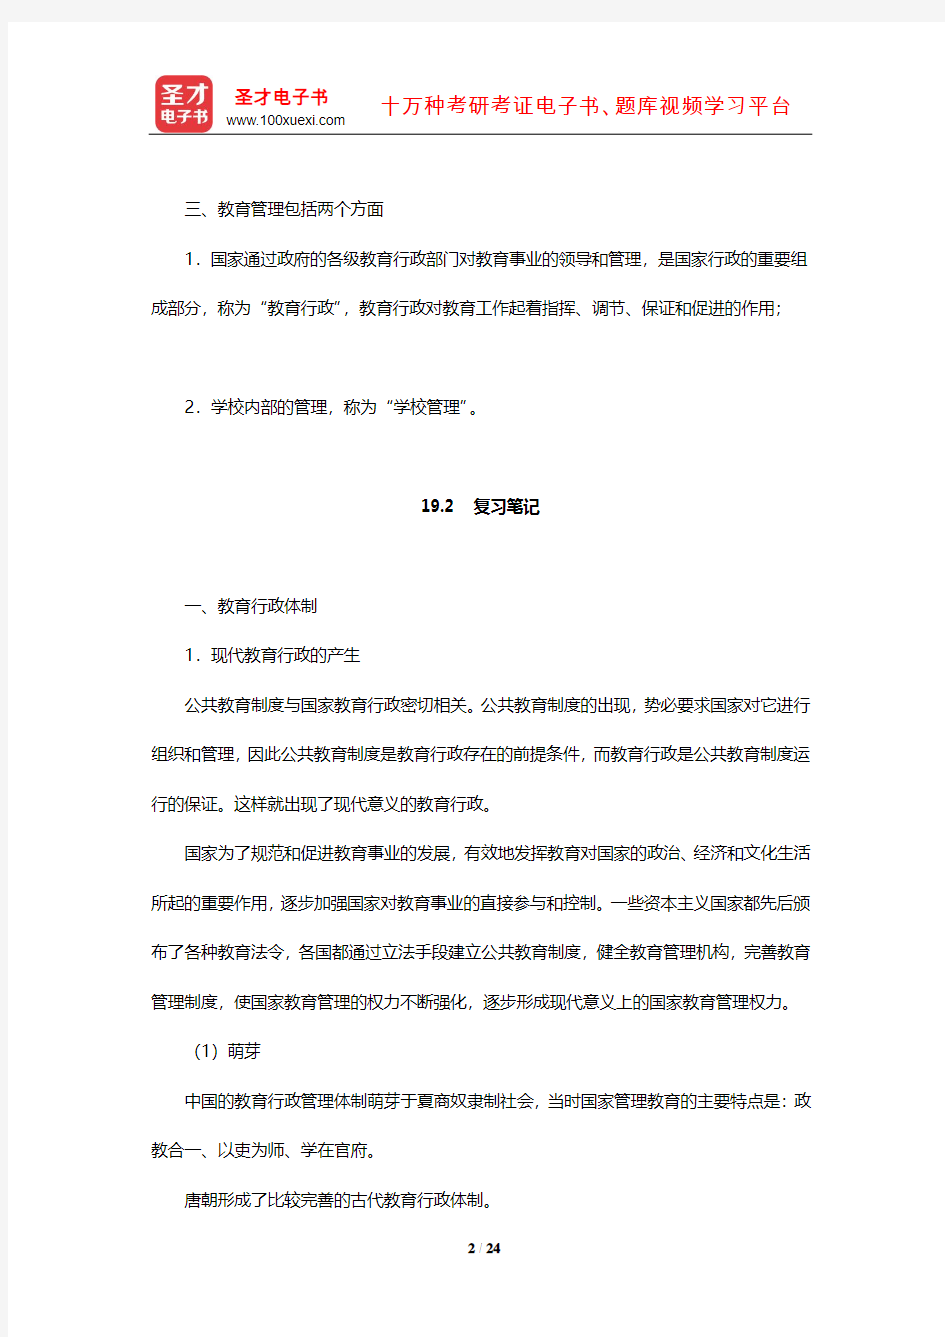 吴文侃、杨汉清《比较教育学》内容提要复习笔记及强化习题(教育管理体制)